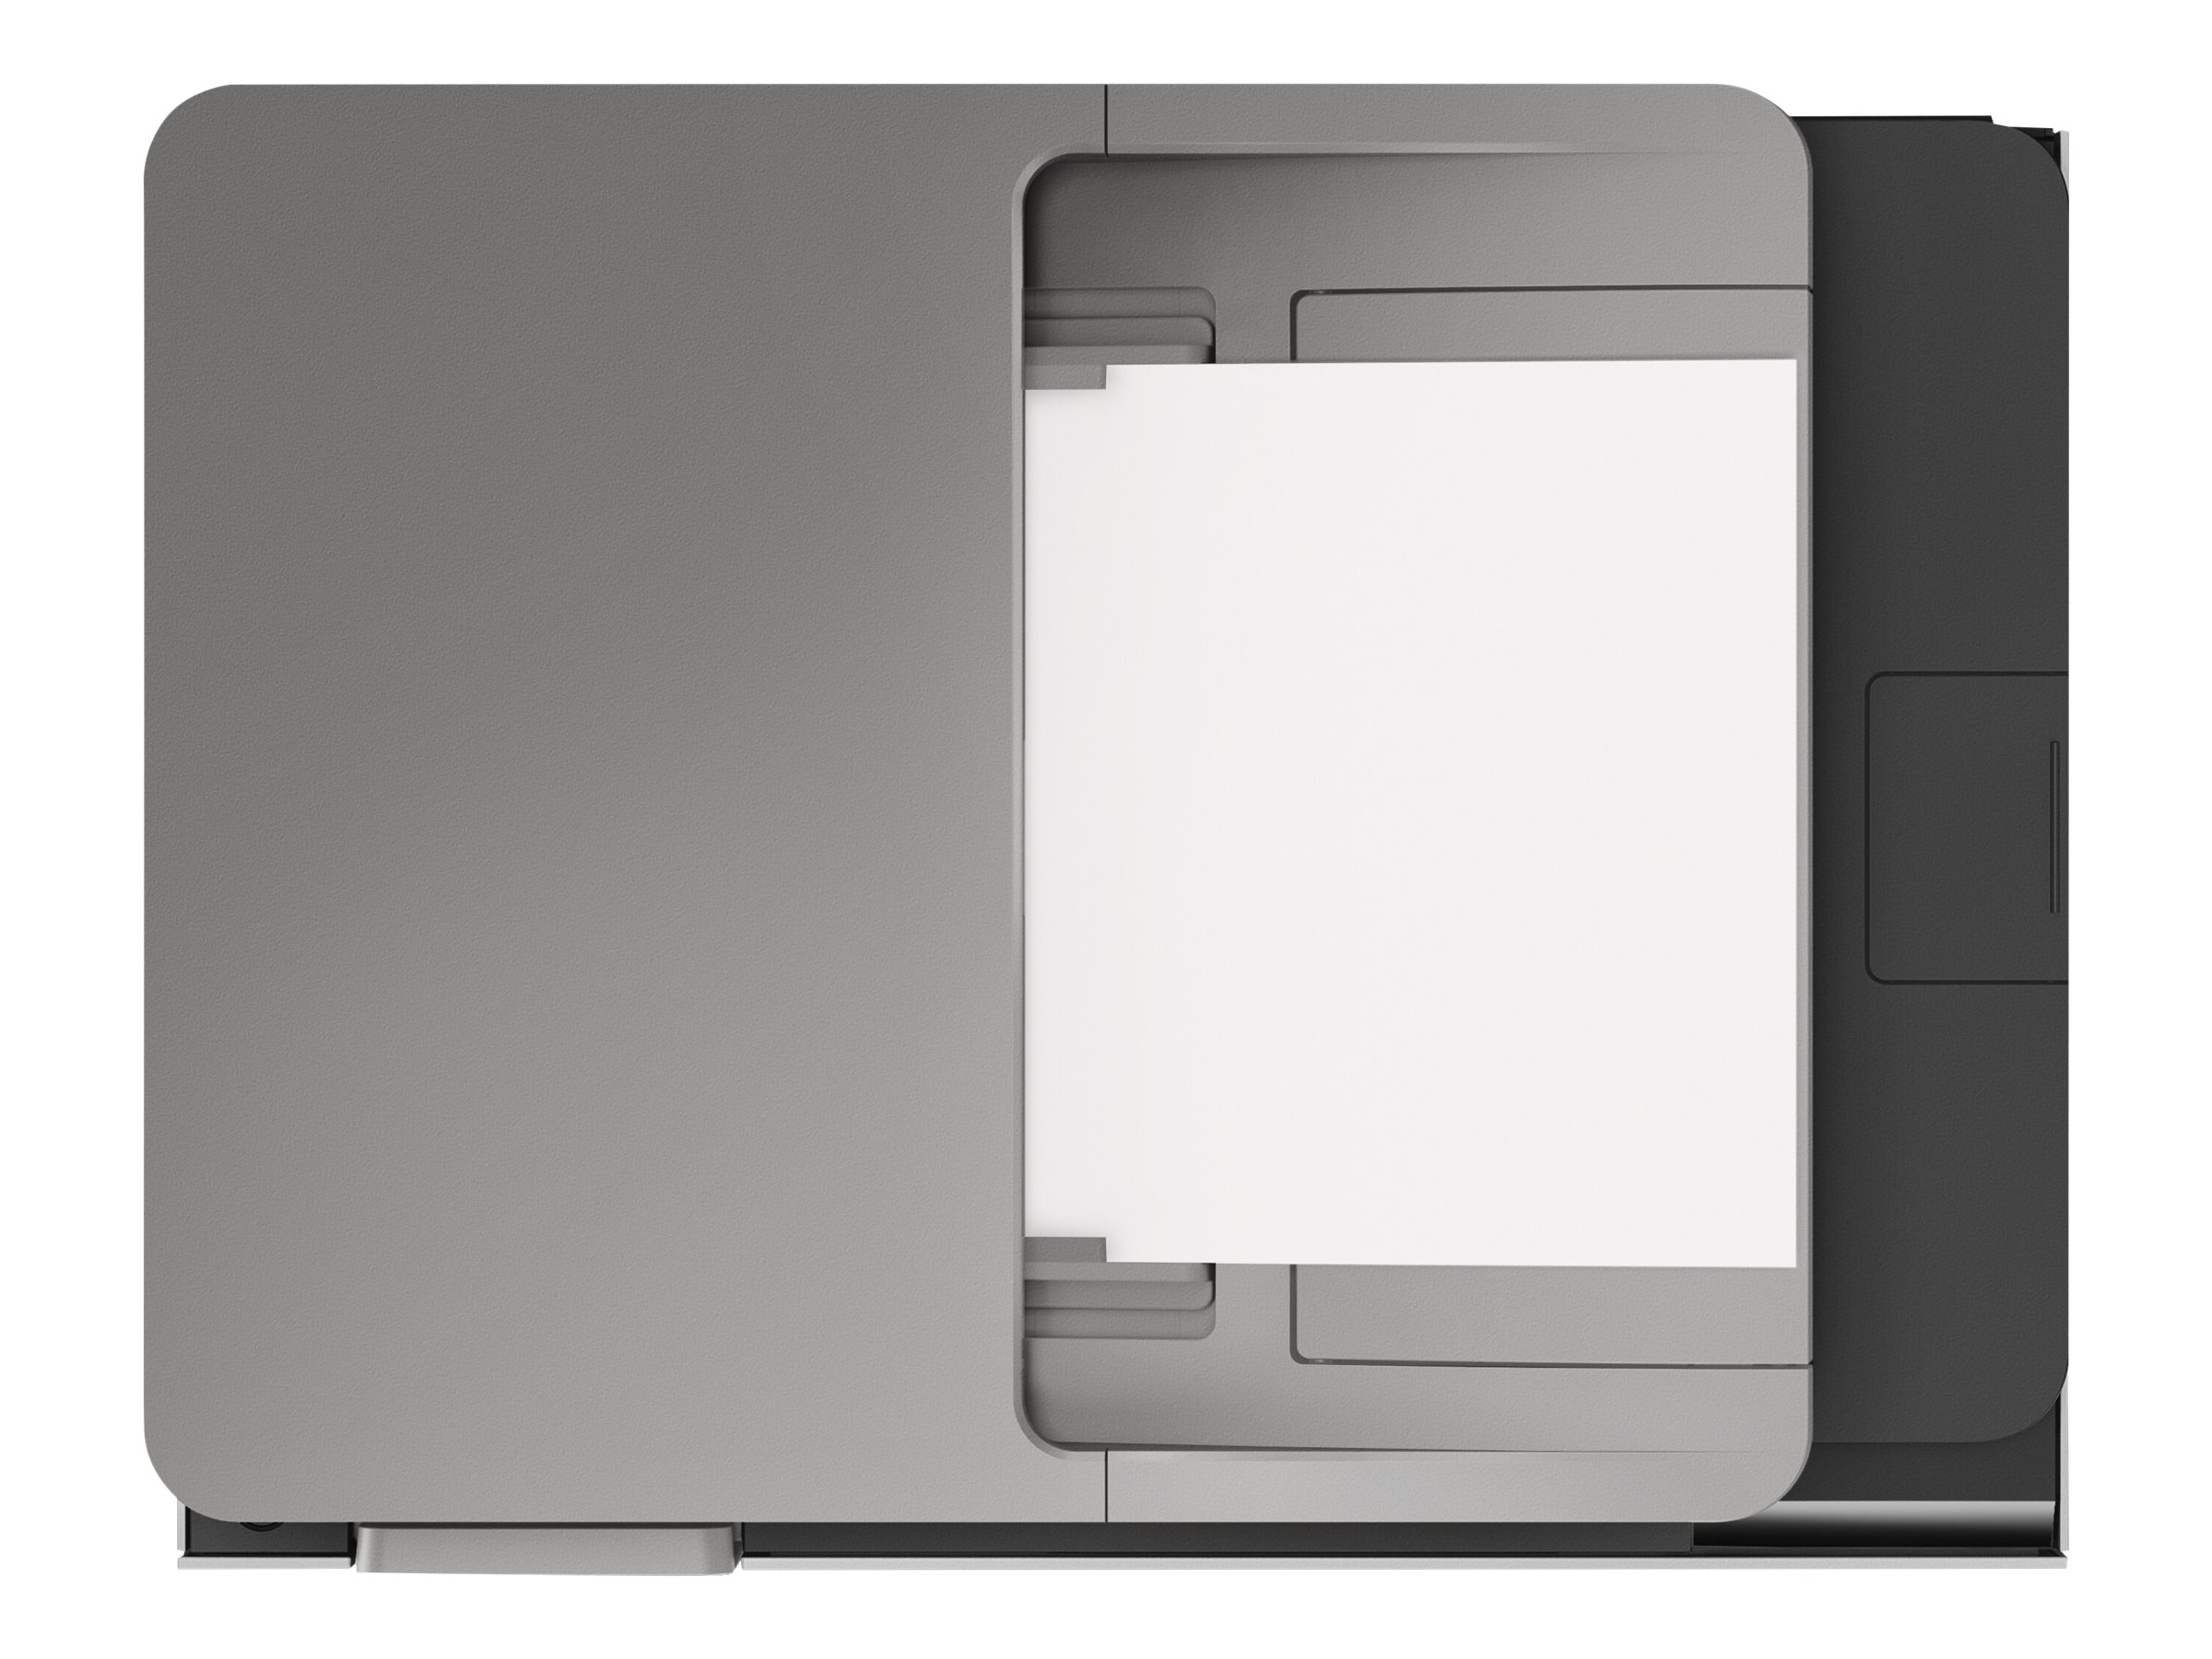 HP OfficeJet Pro 9010 All-in-One Wireless Printer 193015033887